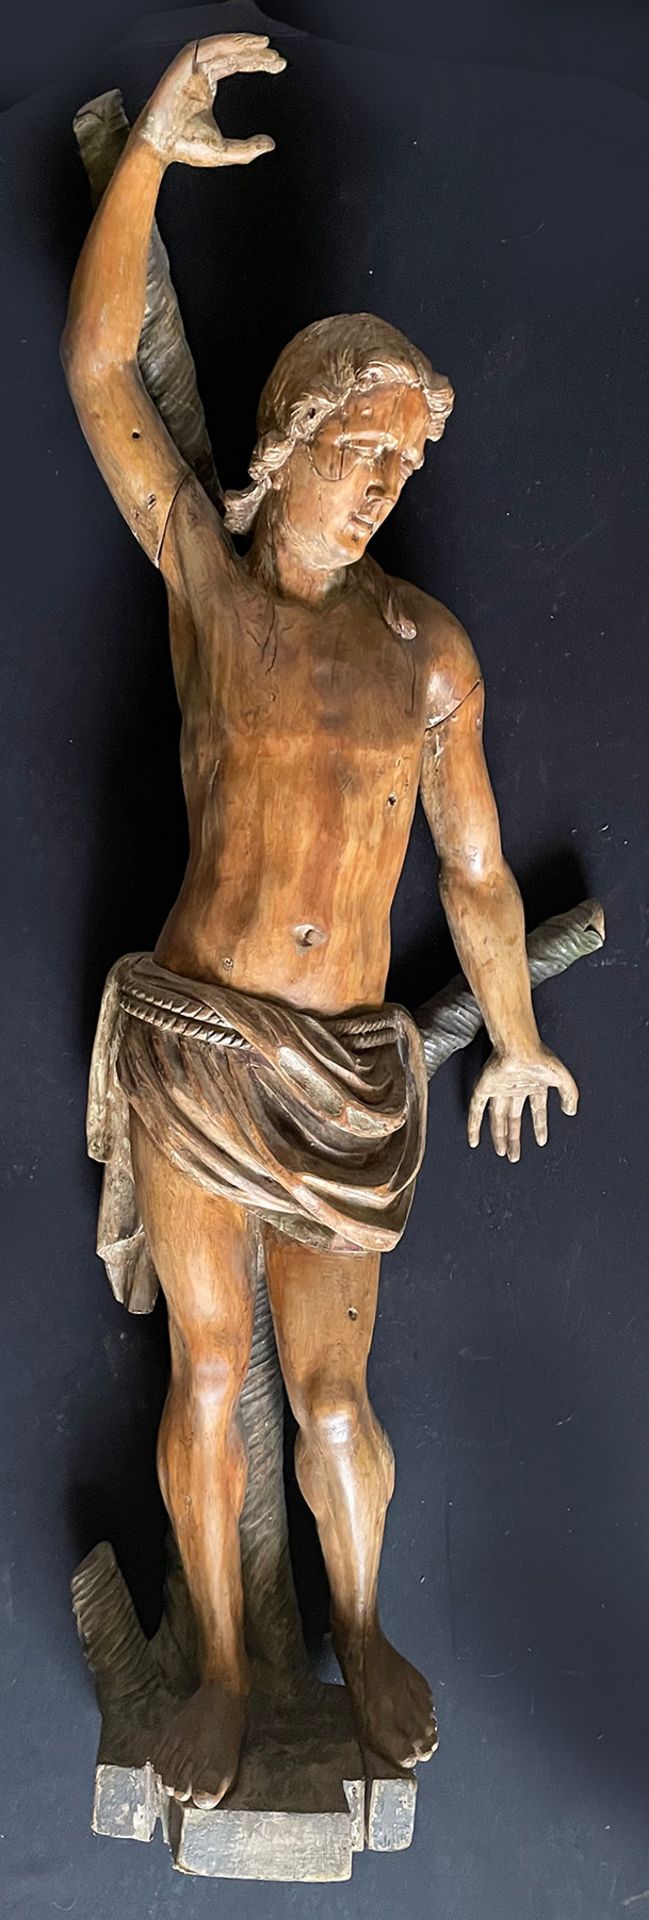 Süddeutsch, 18. Jh. Heiliger Sebastian an einem Baumstamm stehend, Holz. Reste alter Fassung, Pfeile